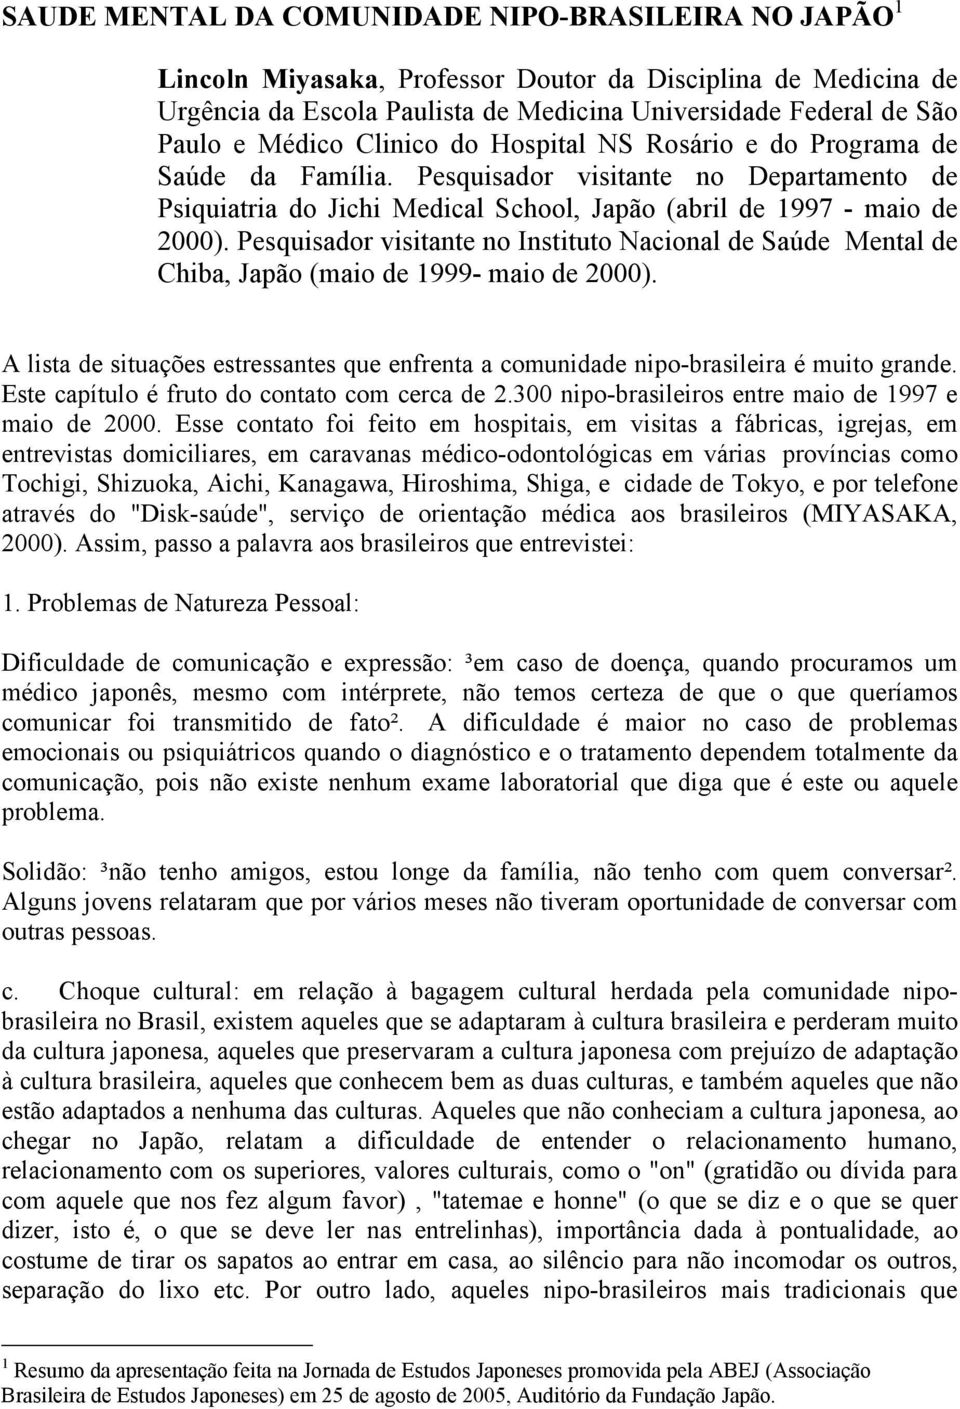 Pesquisador visitante no Instituto Nacional de Saúde Mental de Chiba, Japão (maio de 1999- maio de 2000). A lista de situações estressantes que enfrenta a comunidade nipo-brasileira é muito grande.